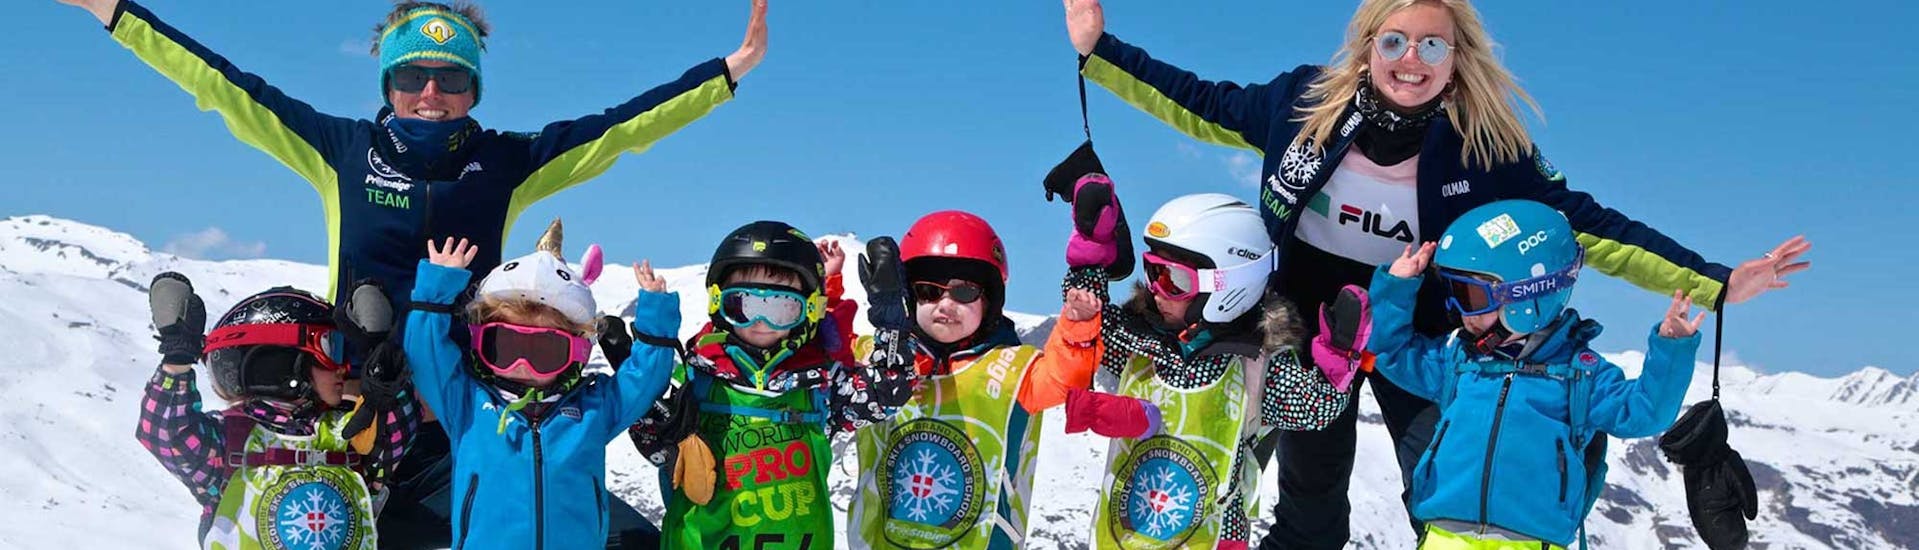 Lezioni di sci per bambini (5-13 anni) - massimo 7 per gruppo.